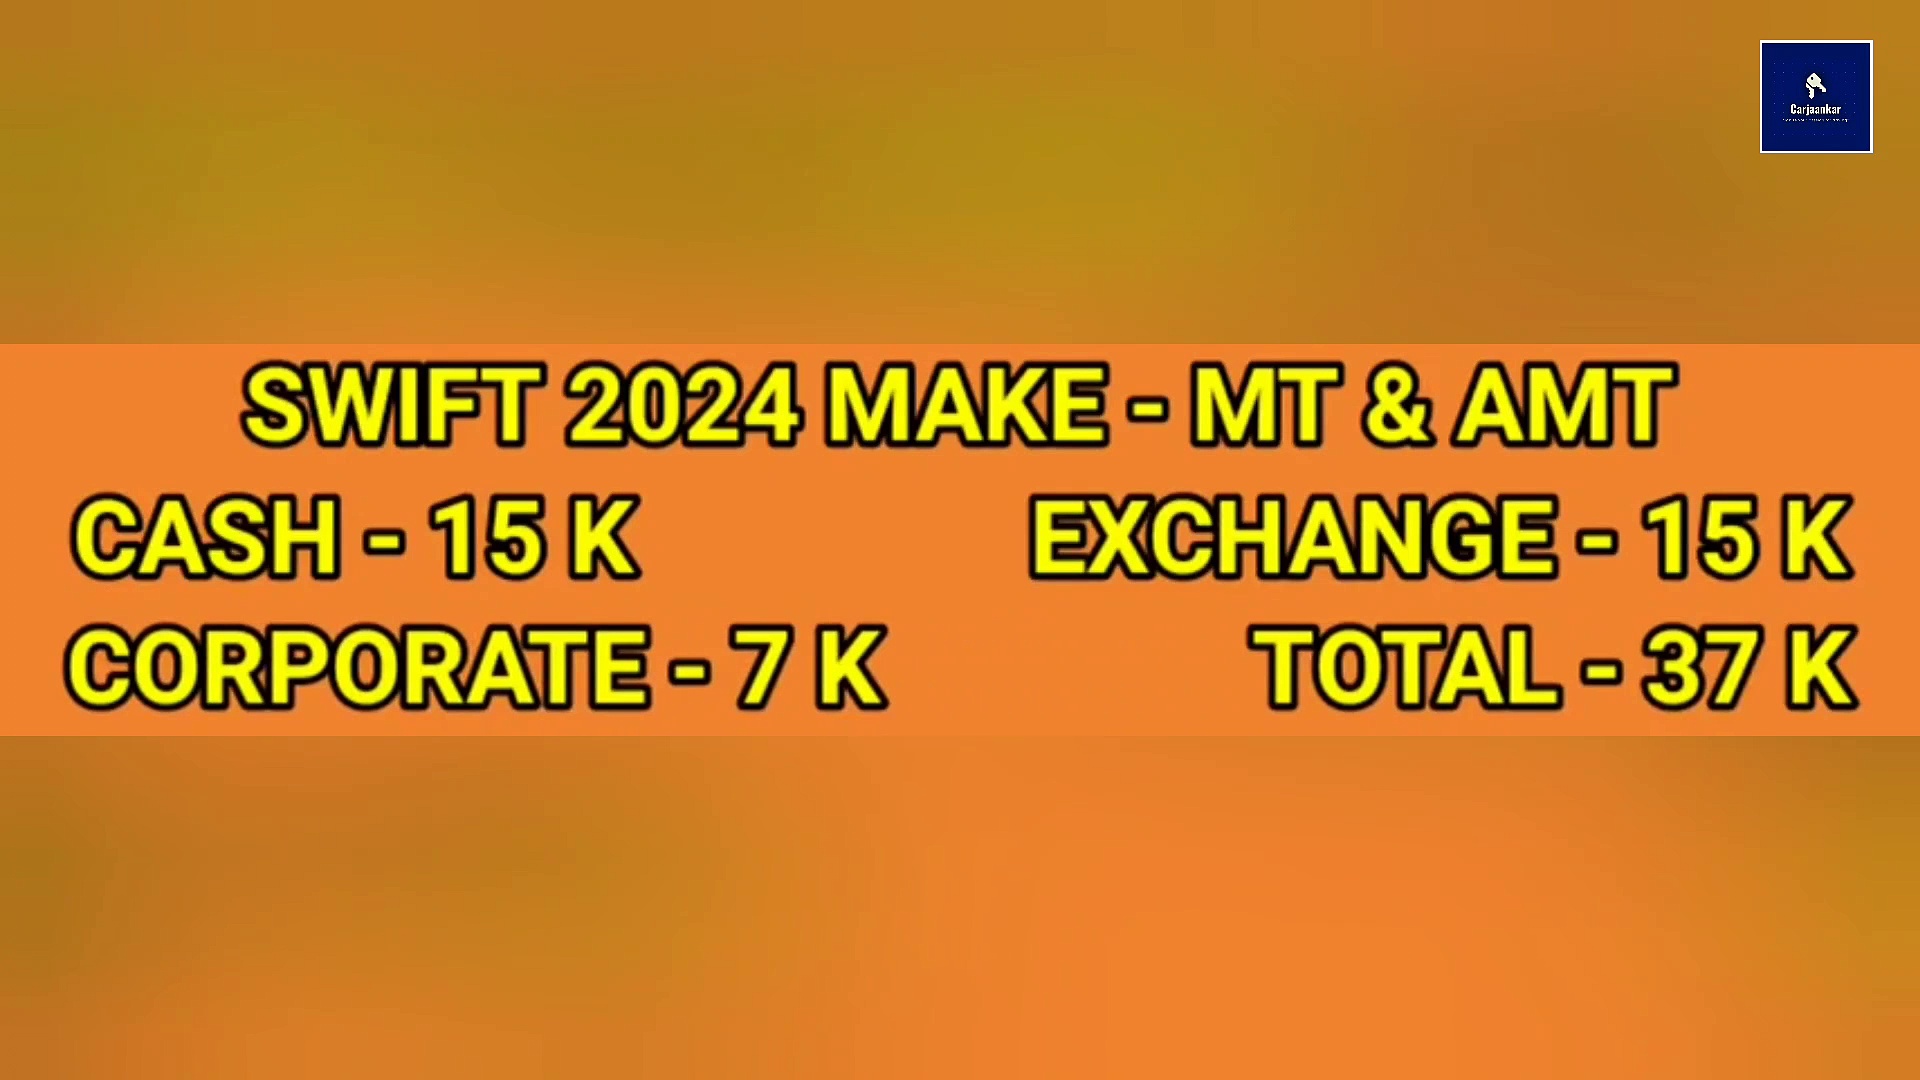 Big Discounts On Maruti Suzuki Swift 204